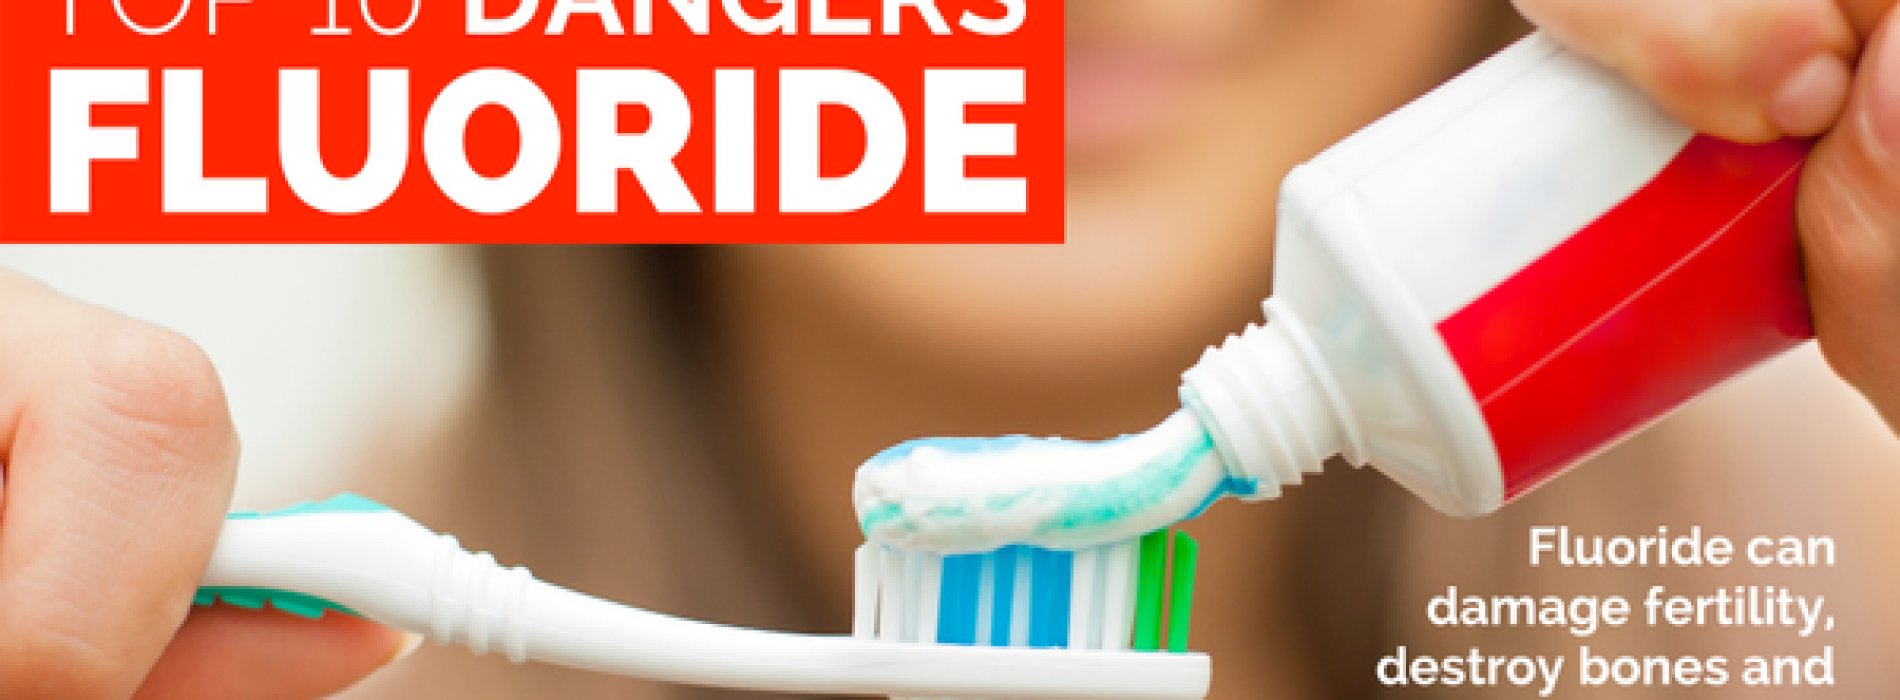 Tandarts waarschuwt voor ‘fluoride’